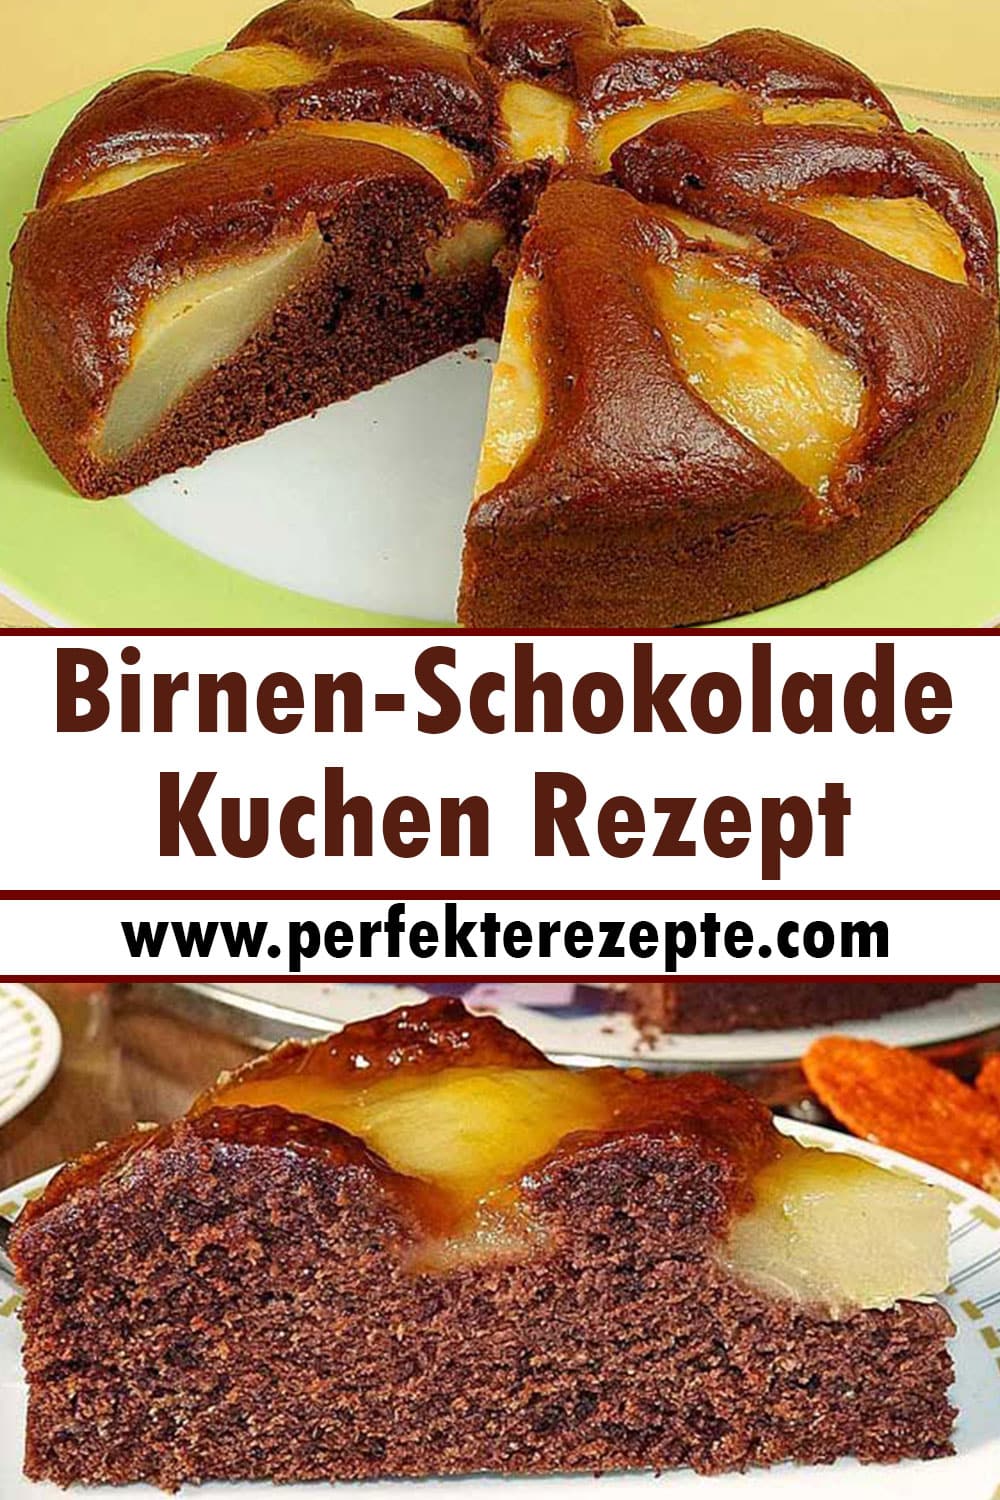 Birnen-Schokolade-Kuchen Rezept